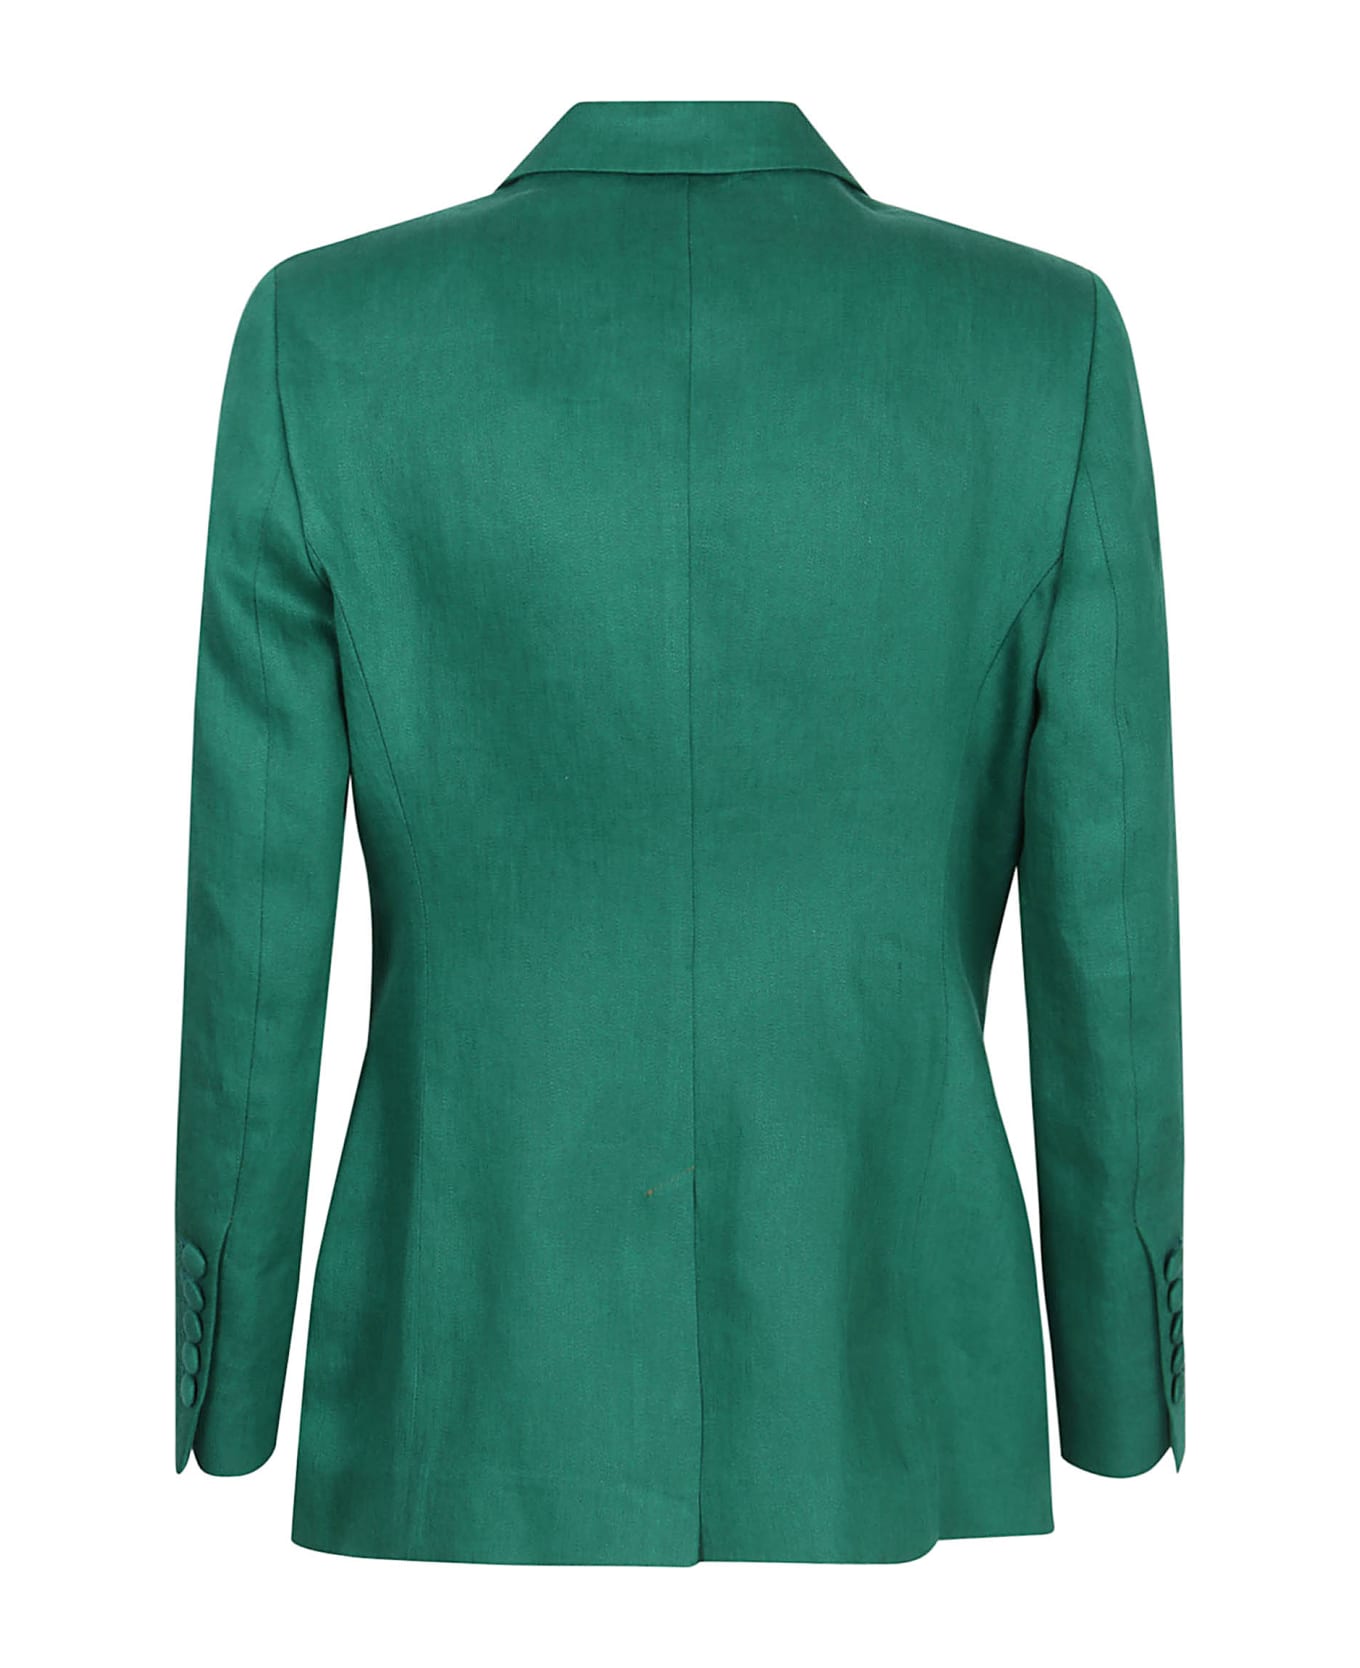 Saulina Milano Assunta Jacket - Green